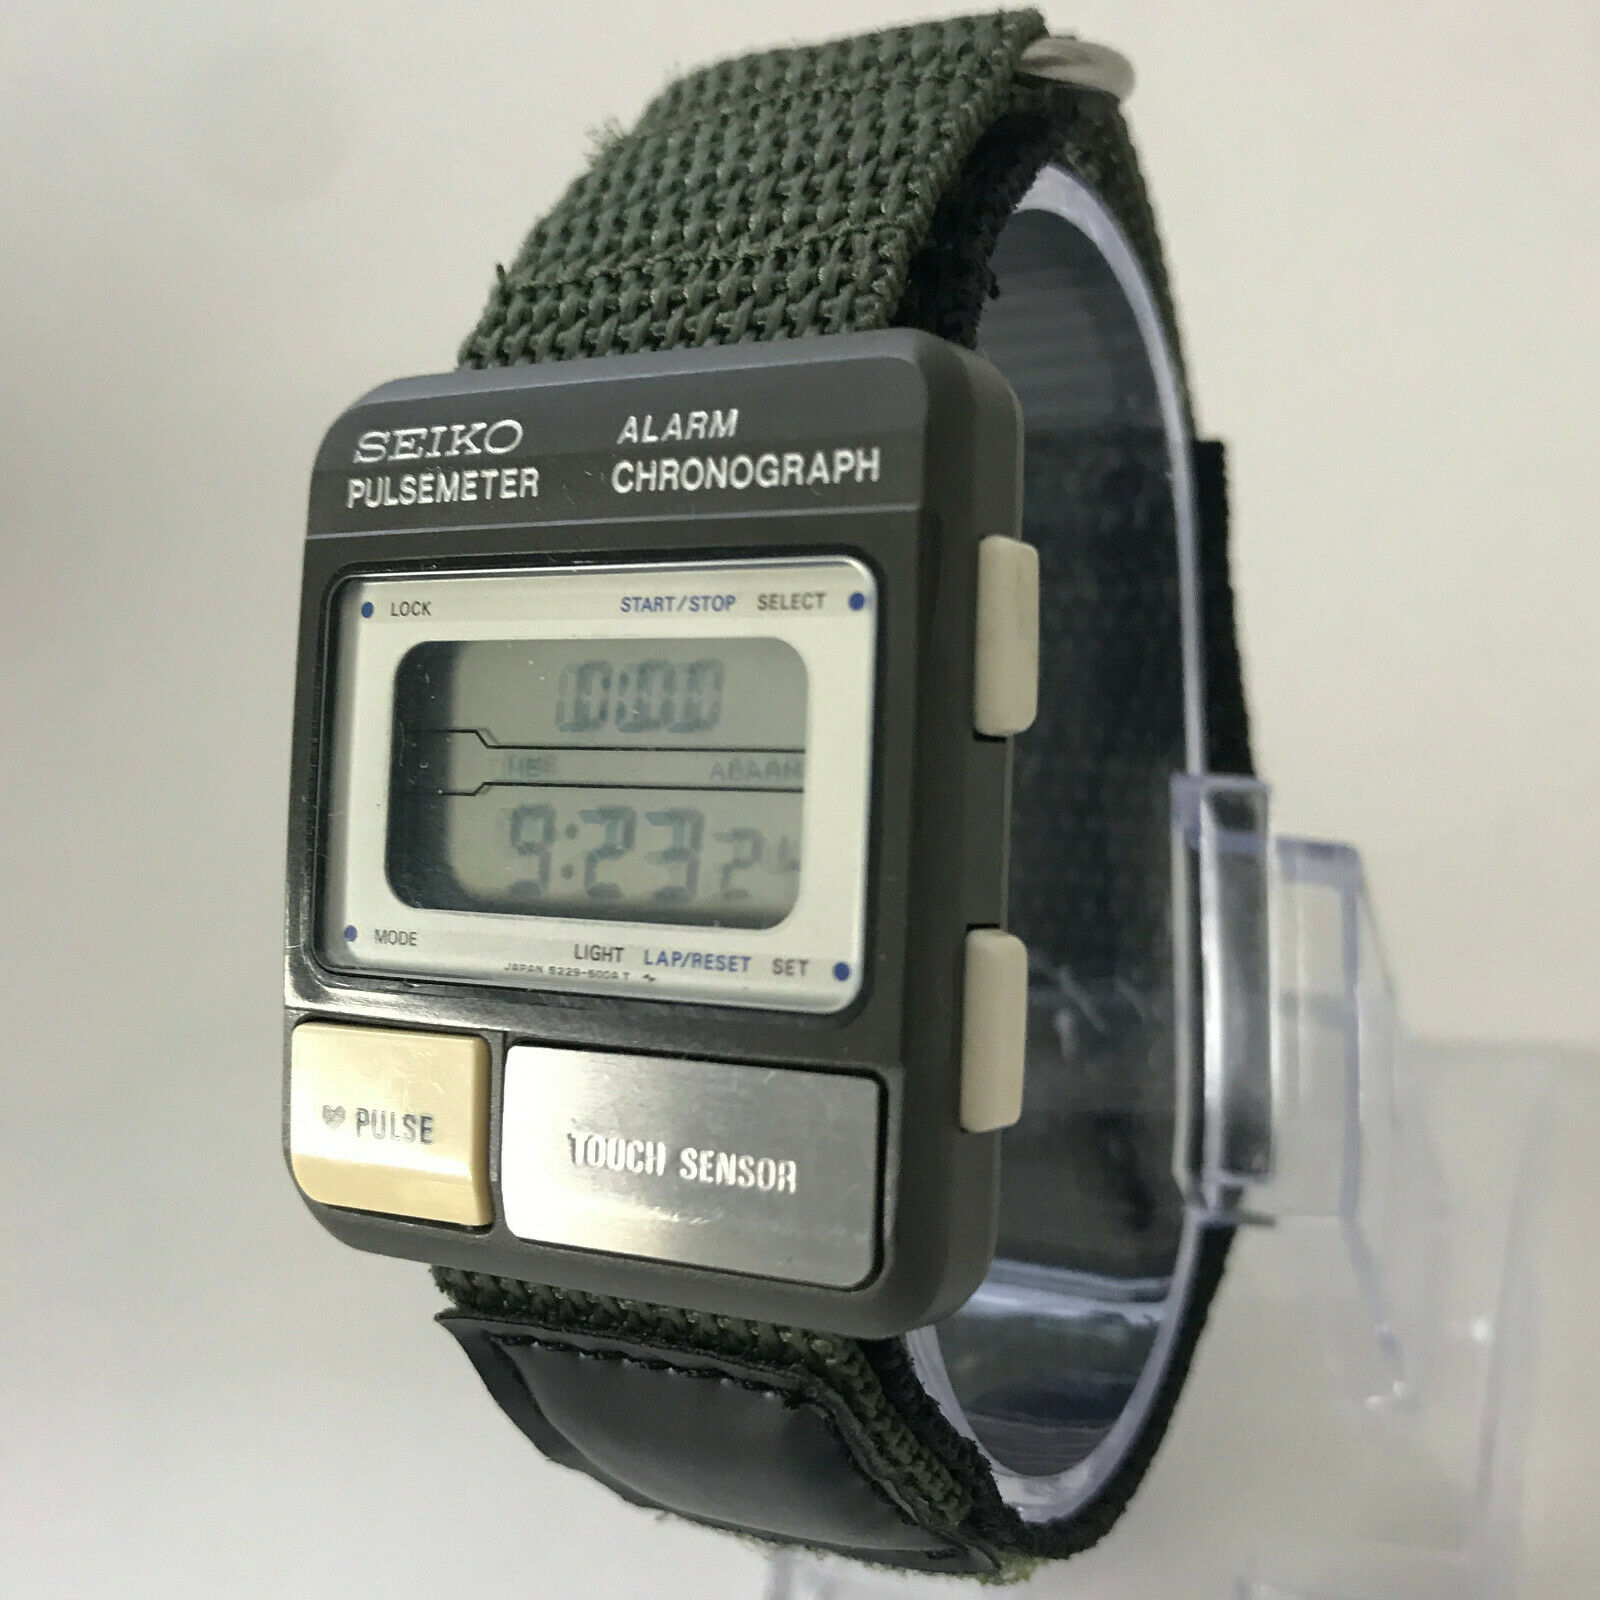 Seiko Pulsemeter (S229-5000) Market Price | WatchCharts